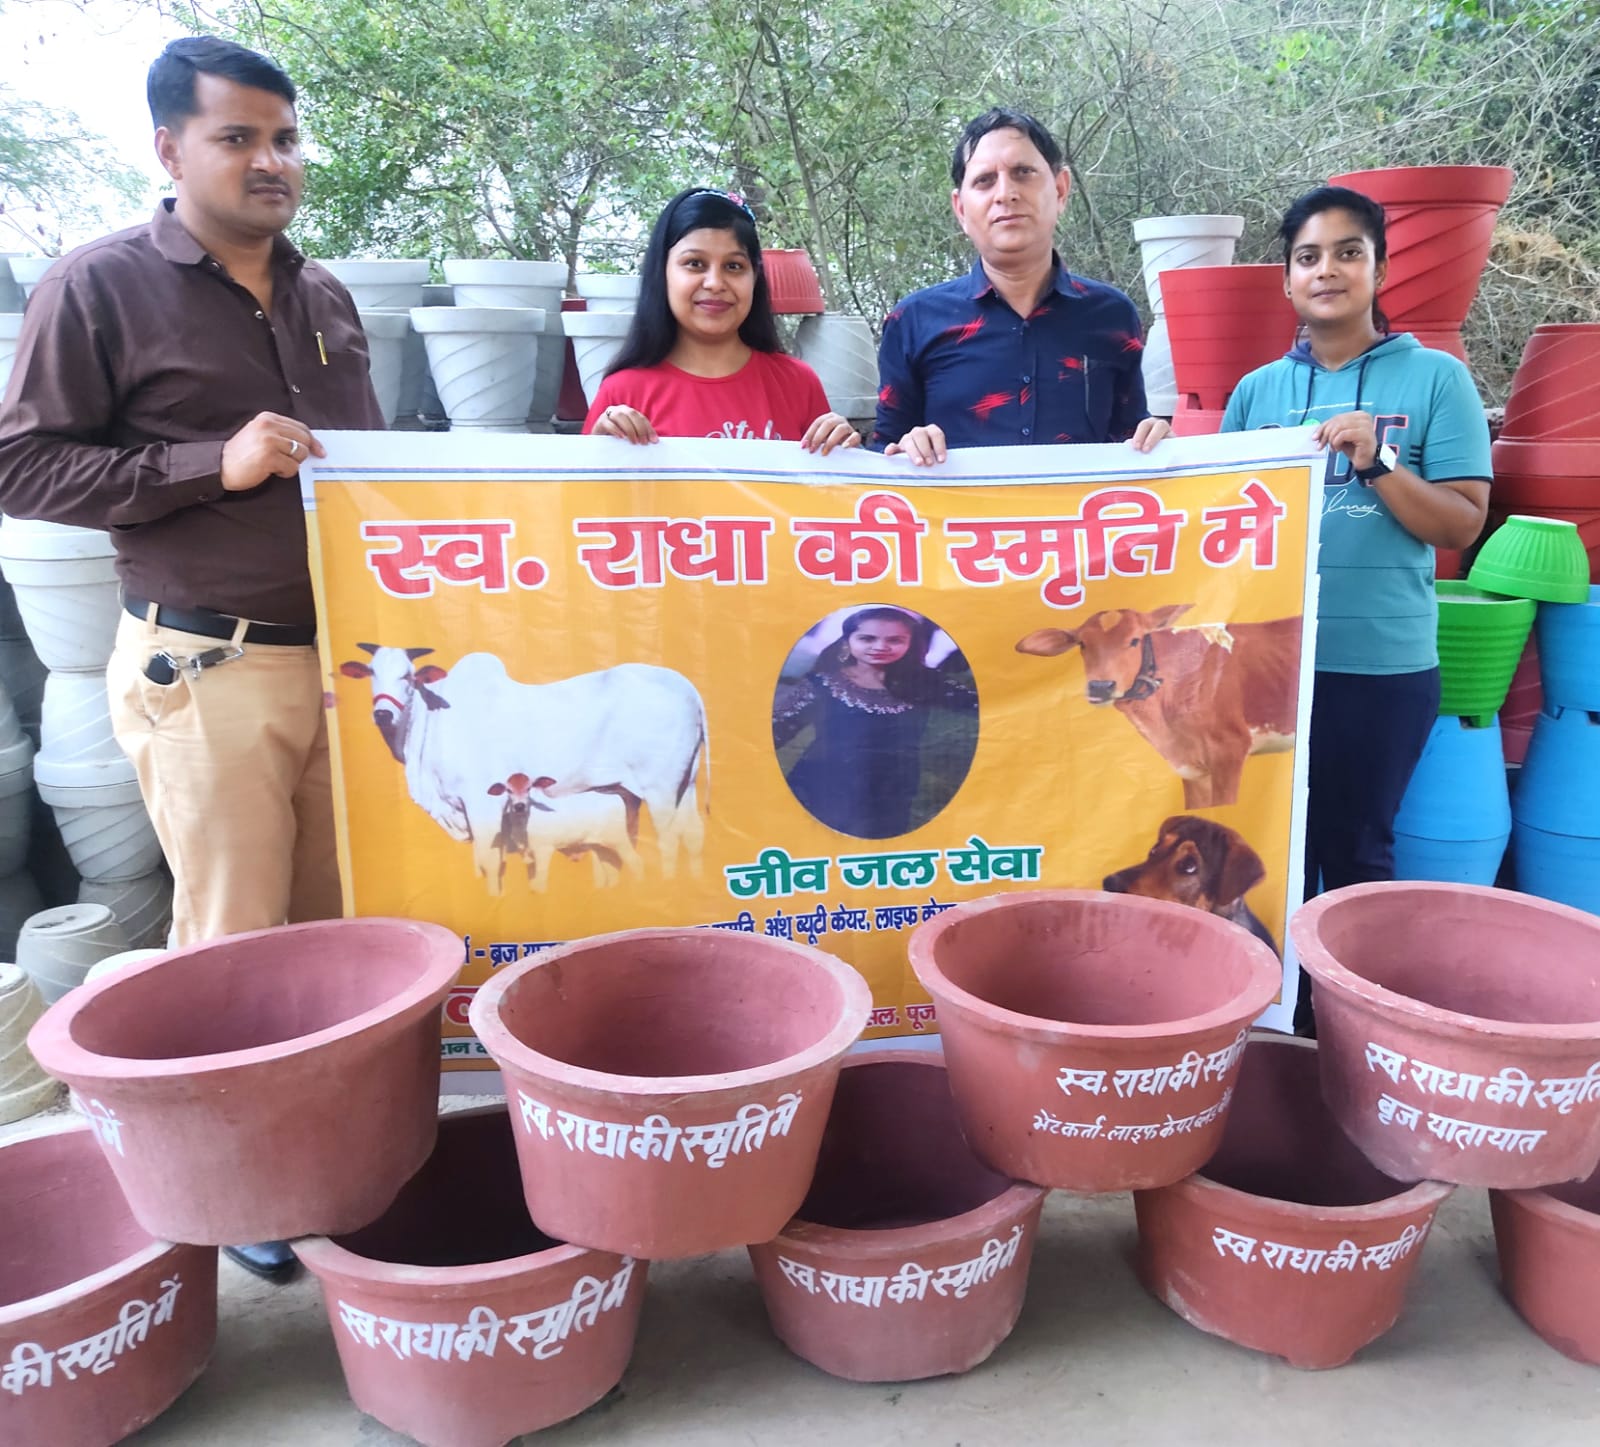 जानवरों के लिए मथुरा महानगर में जगह जगह रखवा पीने के पानी के बर्तन, महिला युवा टीम समाज में कर रही है सराहनीय कार्य: विनोद दीक्षित | New India Times